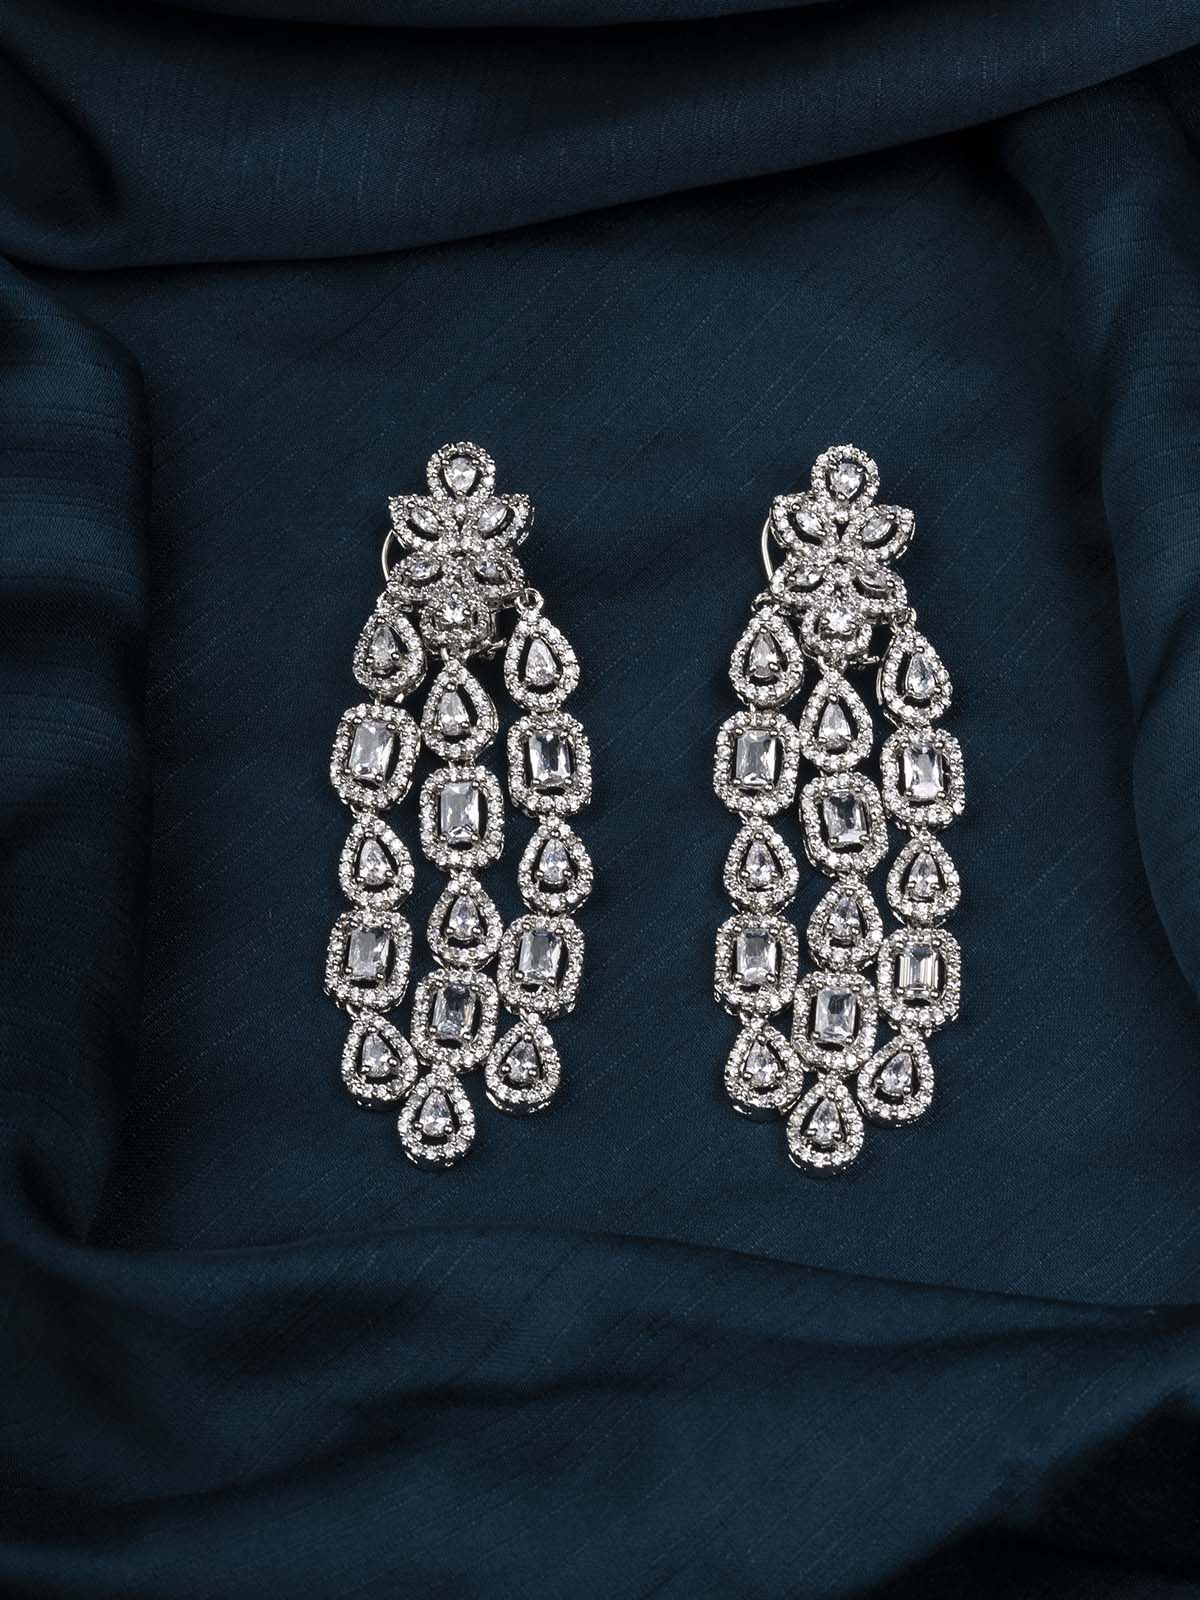 CZEAR528 - Silver Plated Faux Diamond Earrings